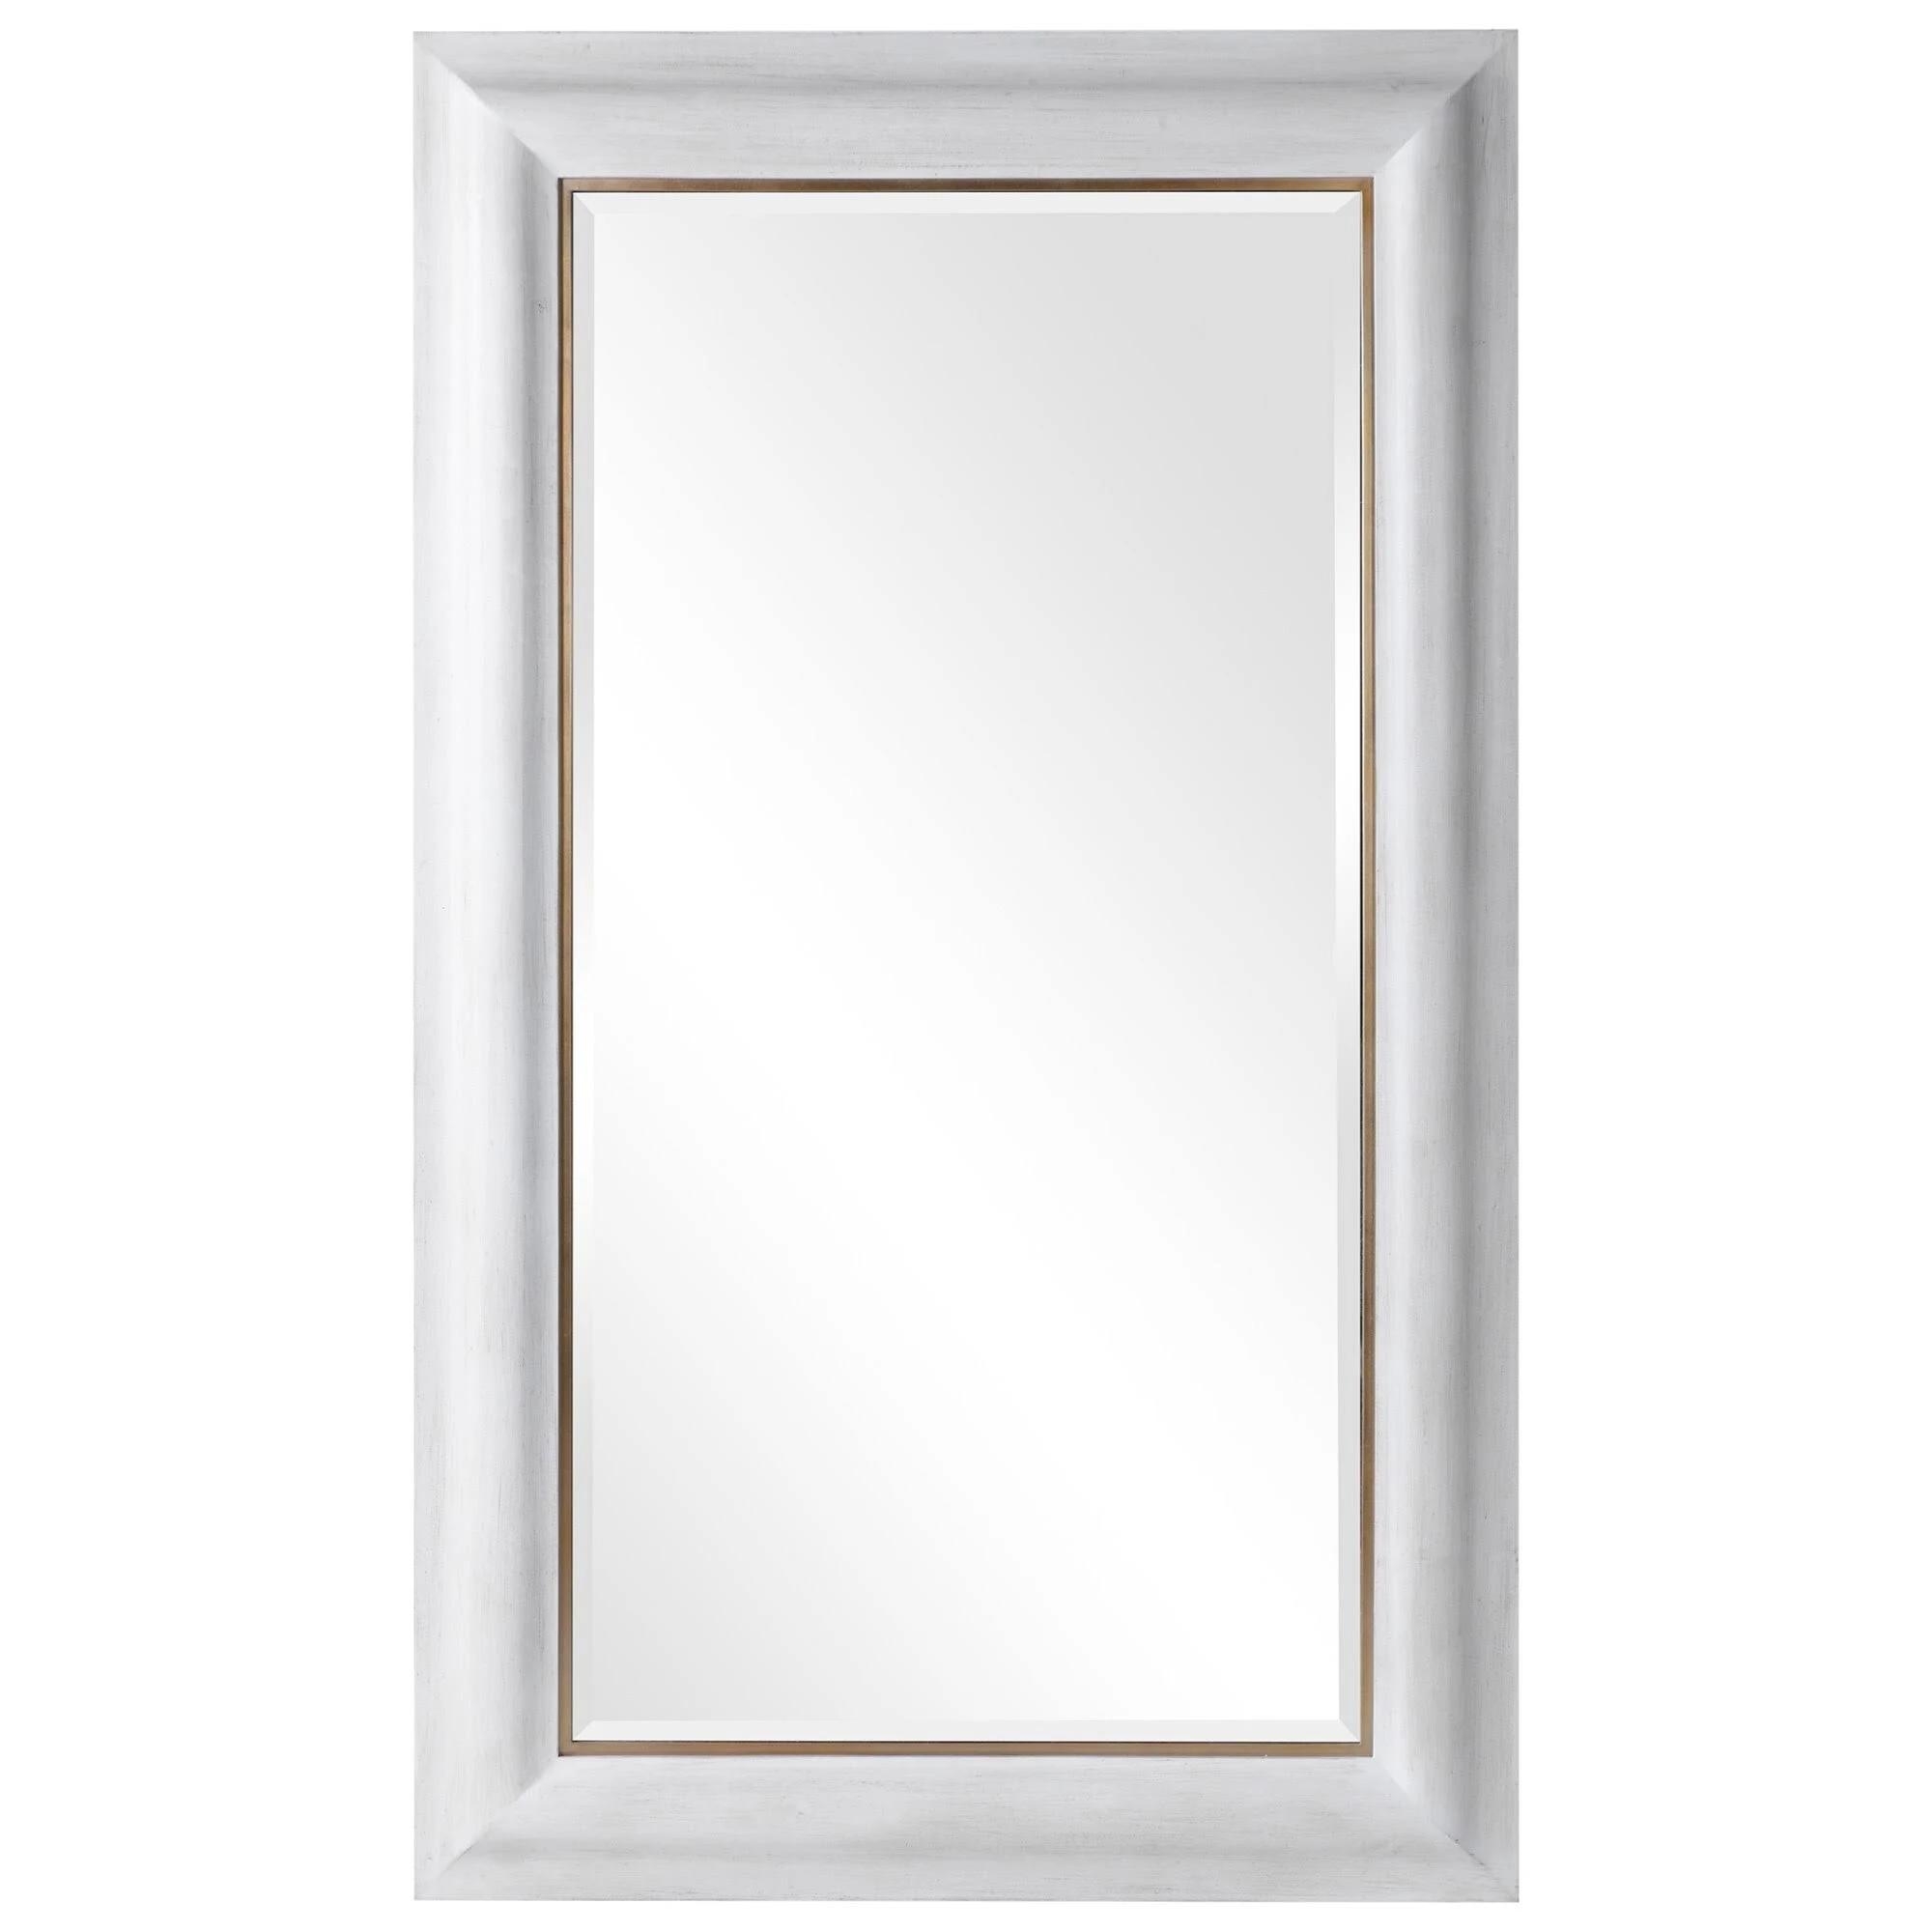 Piper Mirror, White, 30" x 60" - Image 0